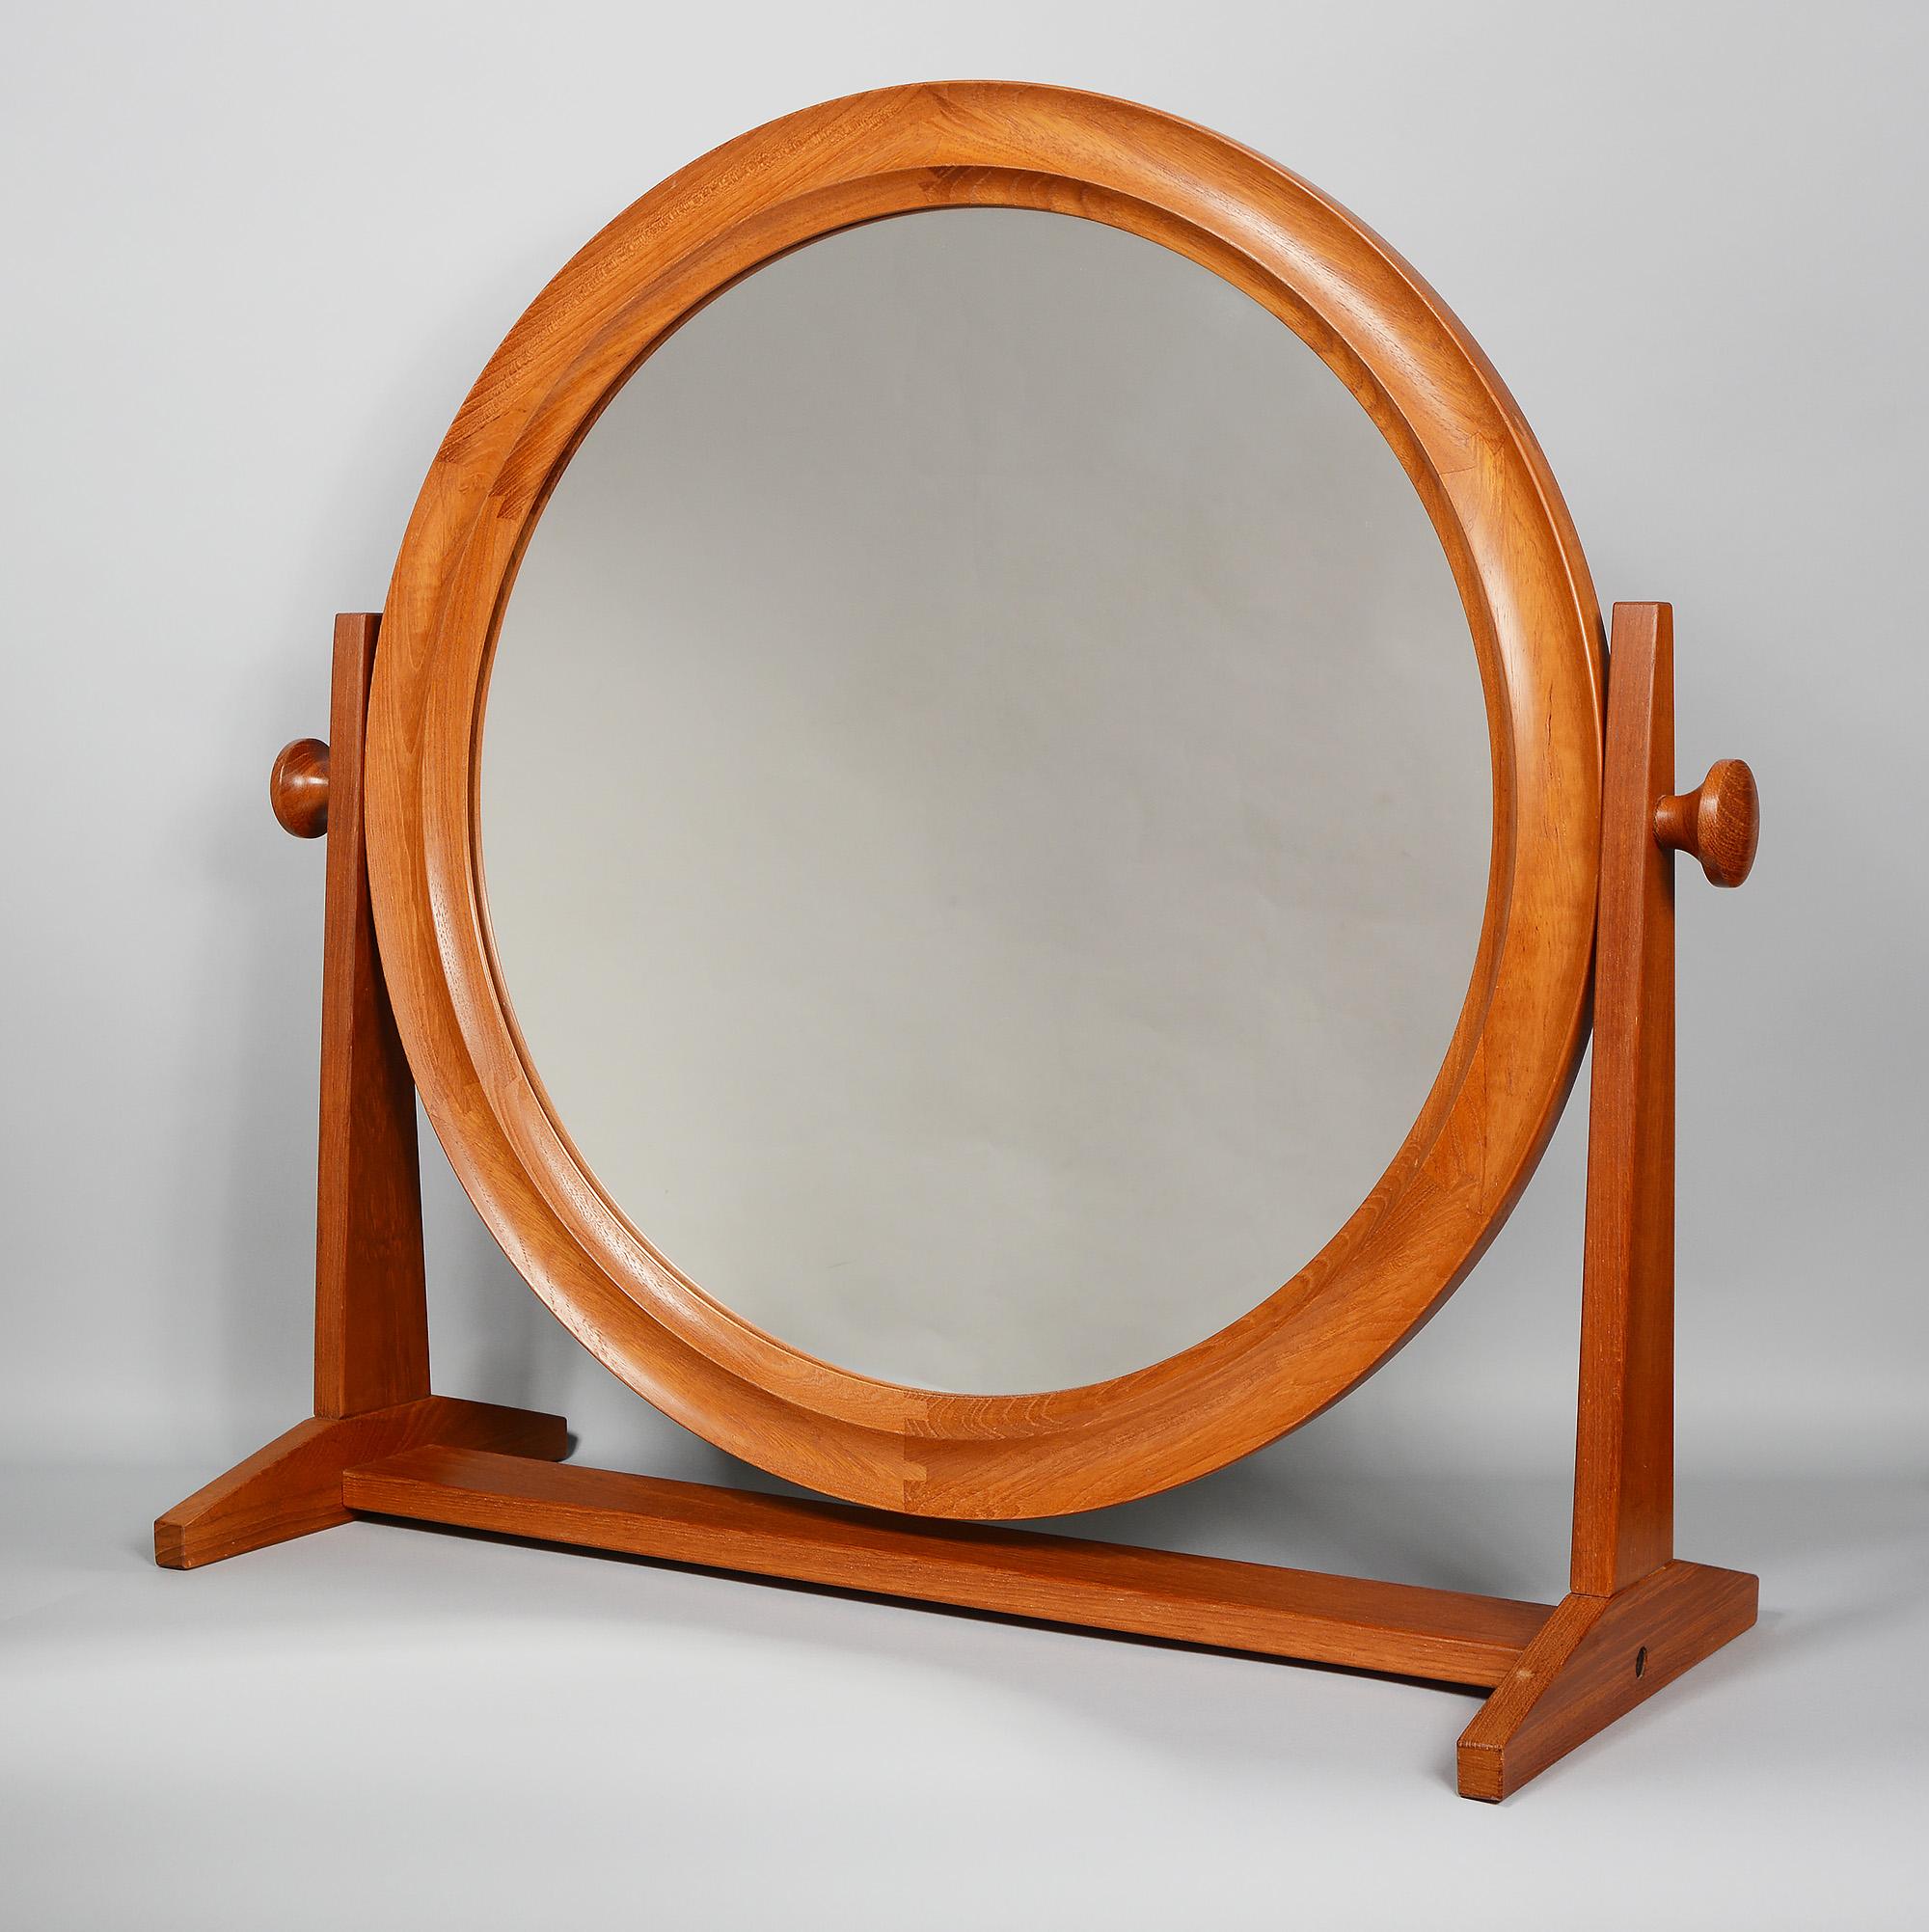 Großer ovaler Tischspiegel mit Tischplatte von Pedersen & Hansen. Der Glasteil hat einen Durchmesser von 19,5 Zoll und der Rahmen mit den Knöpfen ist 28 Zoll breit. Der Rahmen ist aus Teakholz gefertigt. Der Spiegelrahmen hat großartige